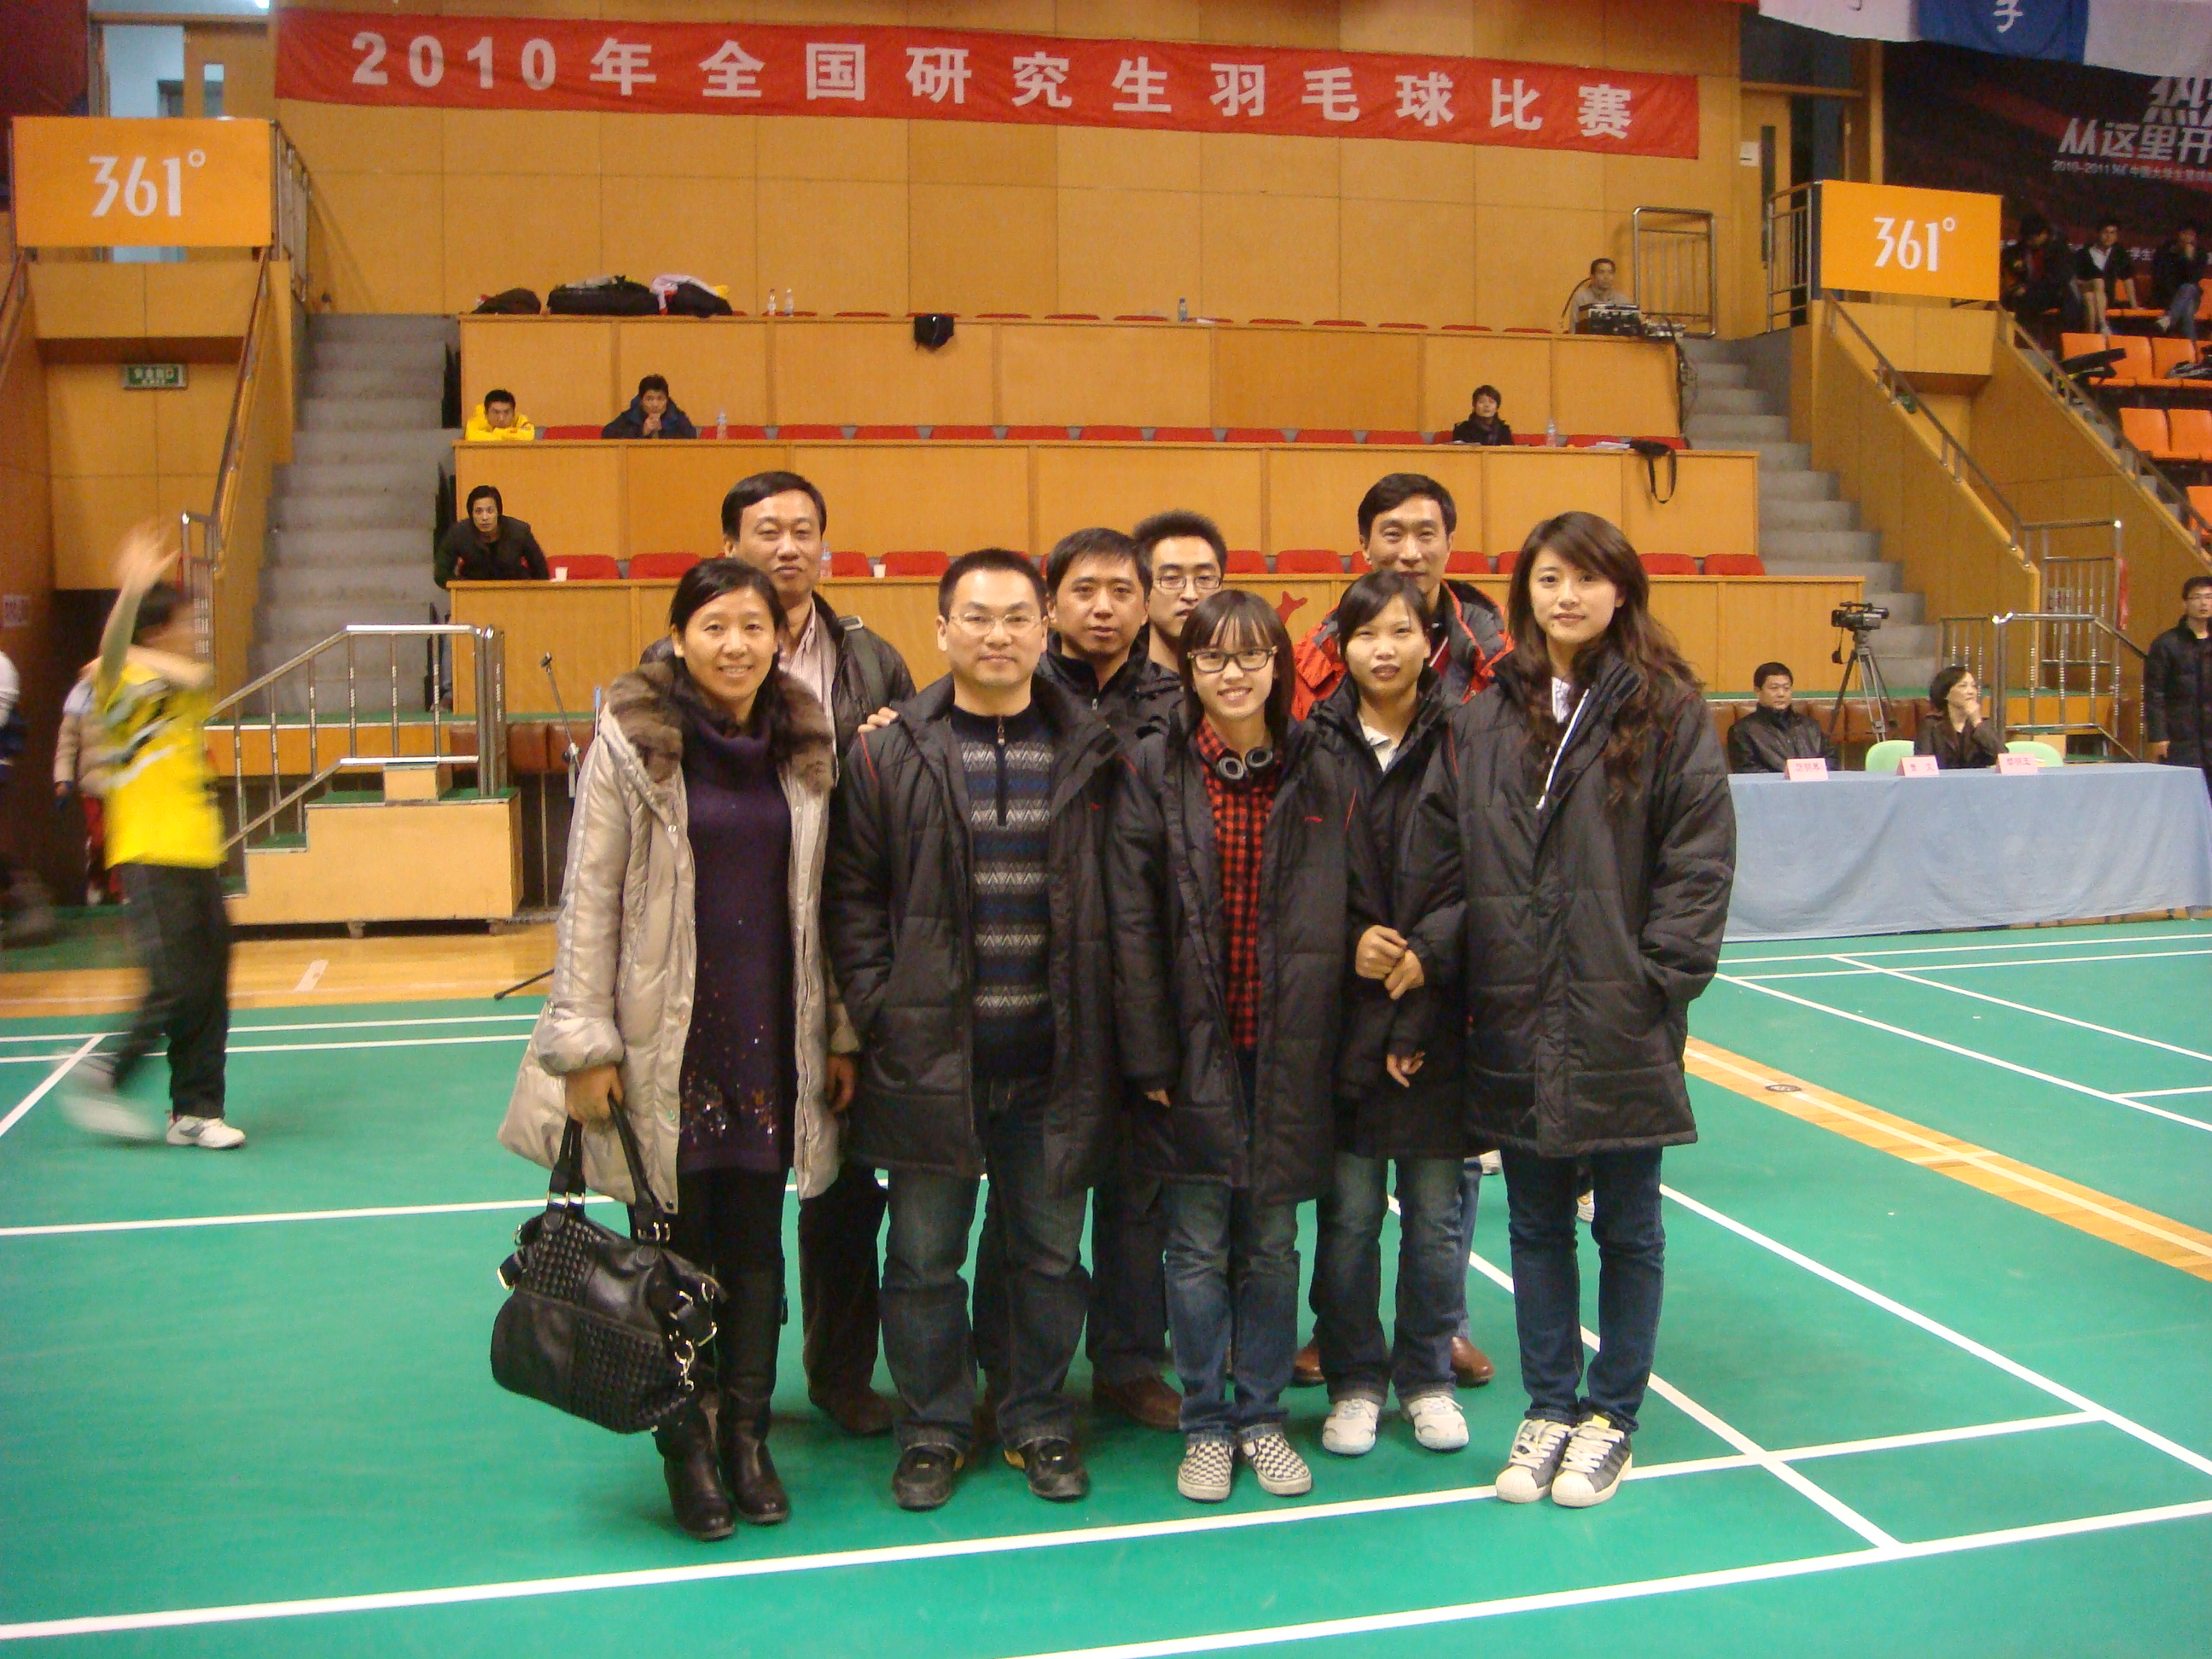 我校参加全国羽毛球比赛的代表队集体合影